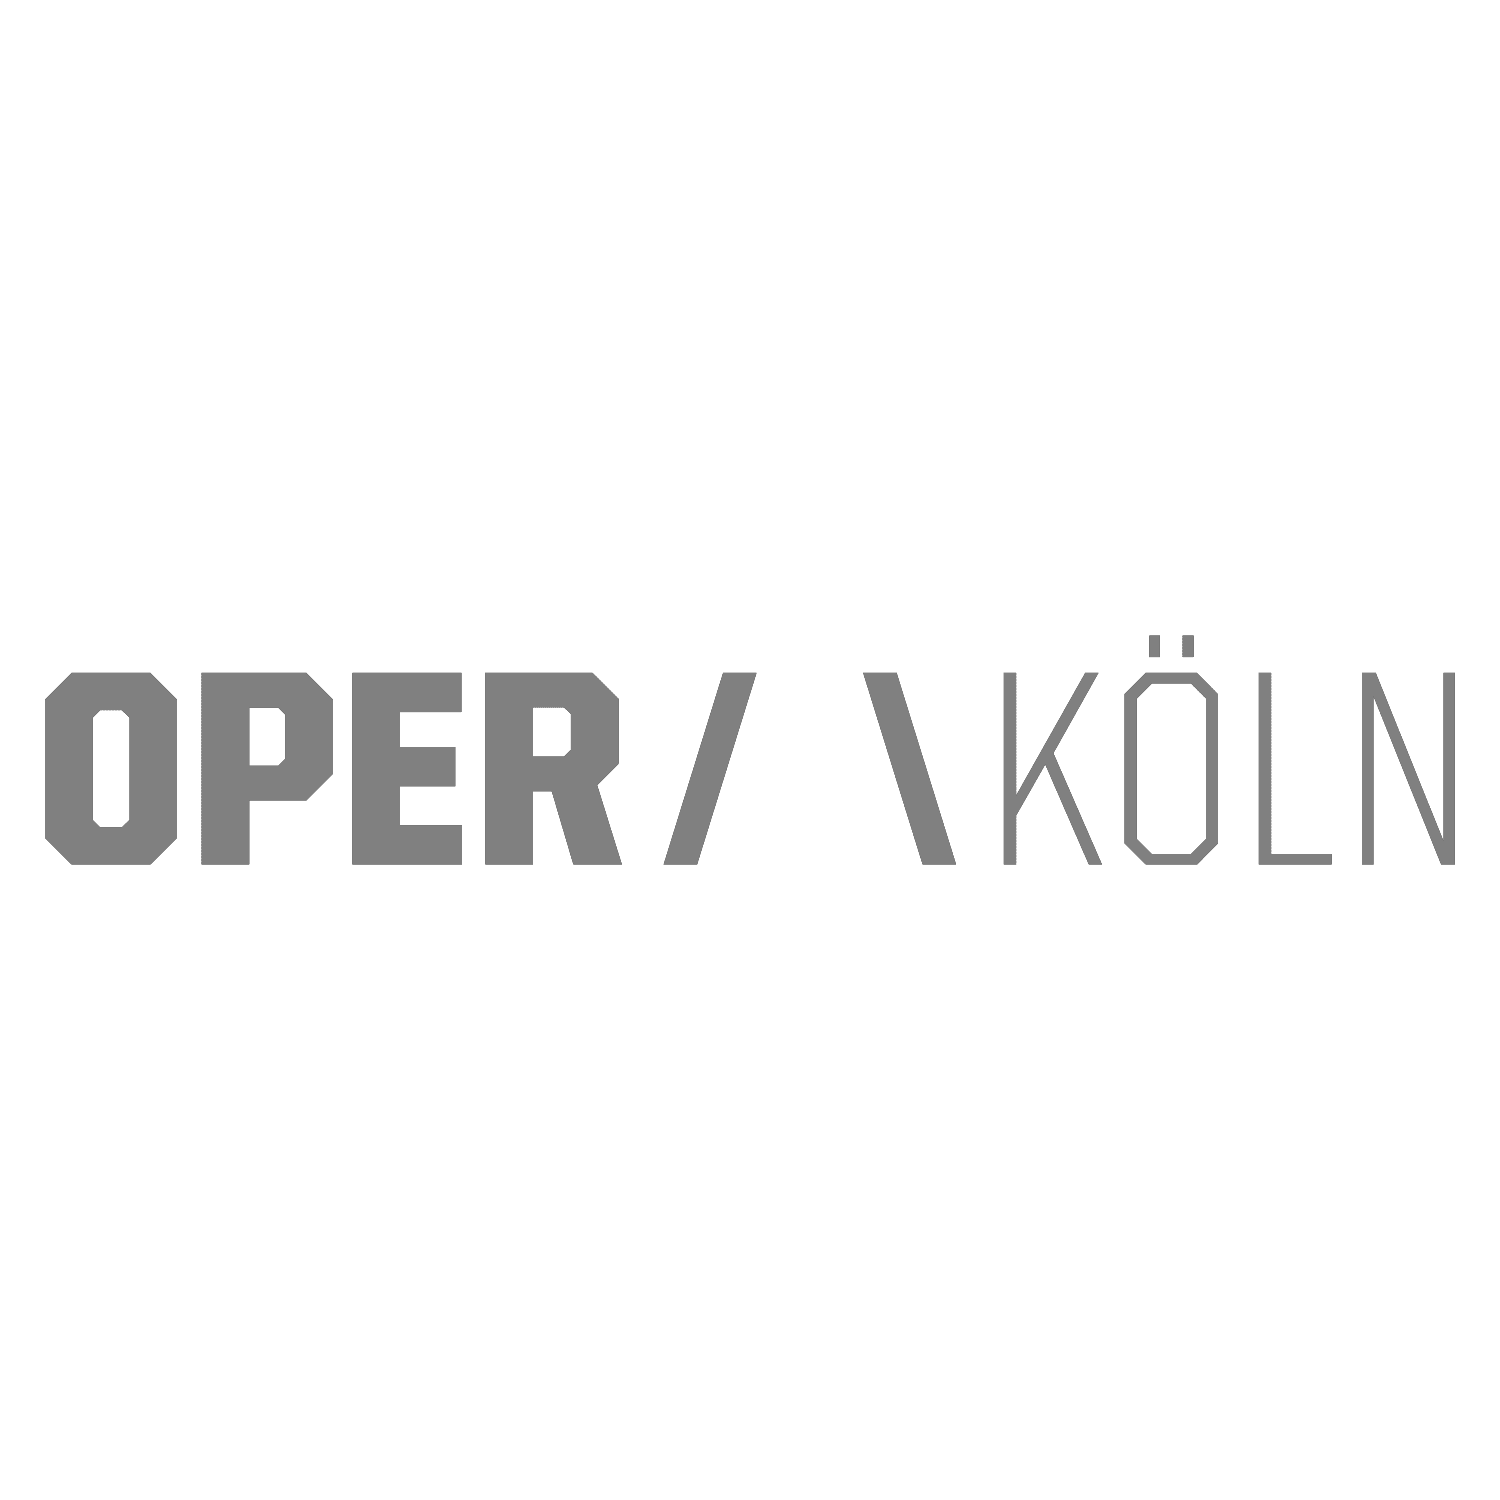 Das Logo von der Oper Köln